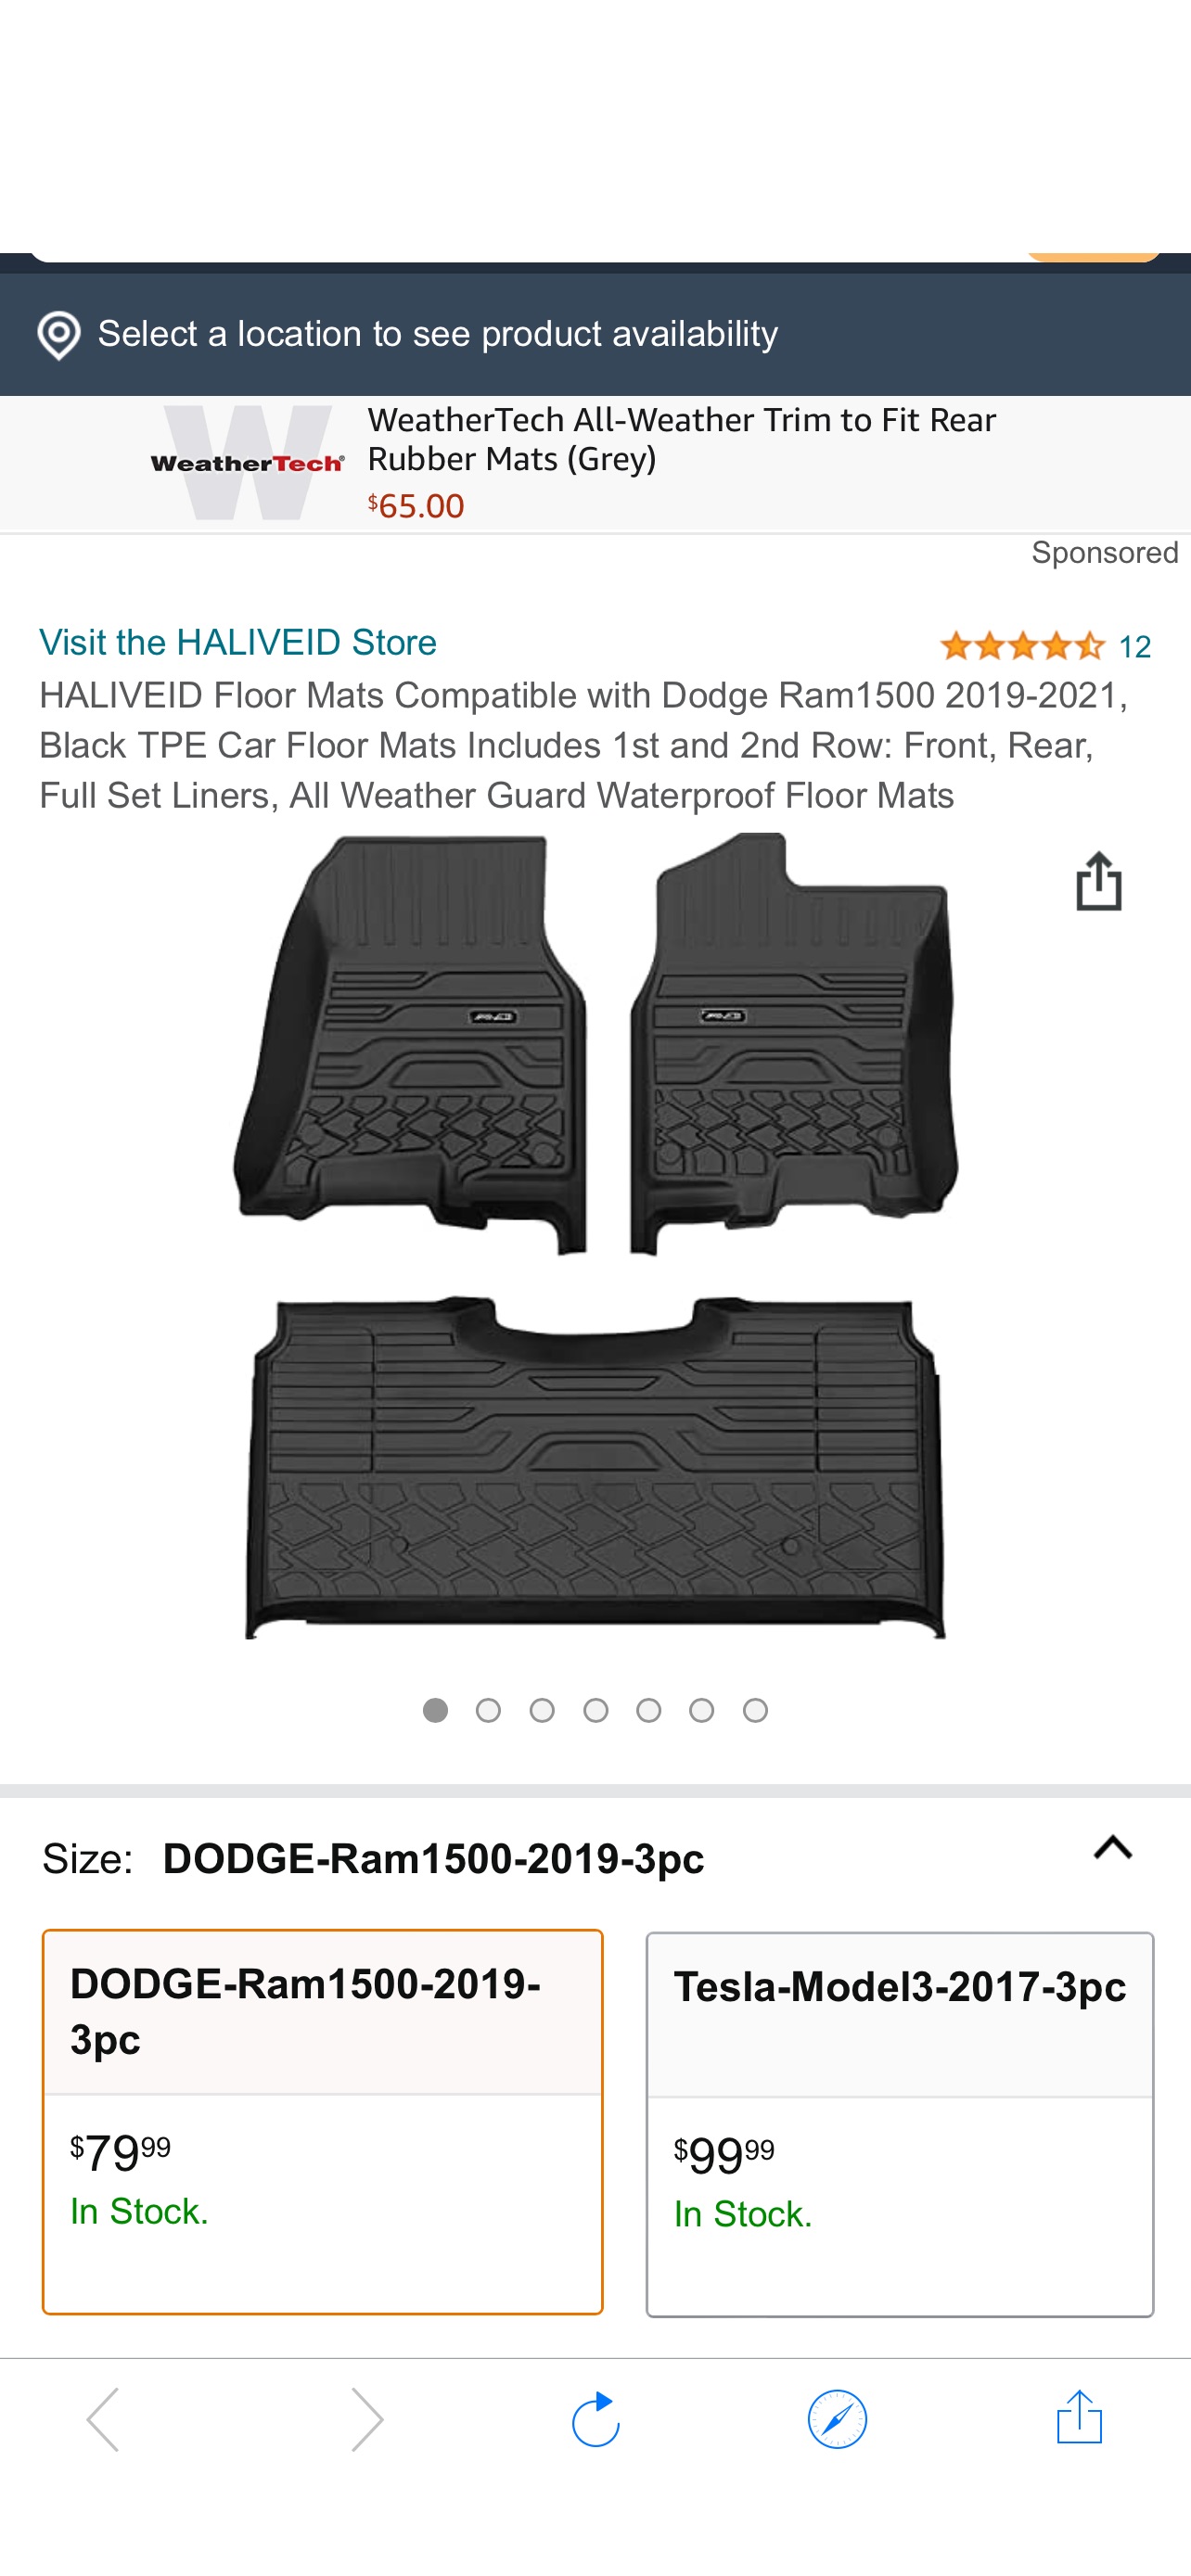 HALIVEID Floor Mats Compatible with Dodge Ram1500 2019-2021